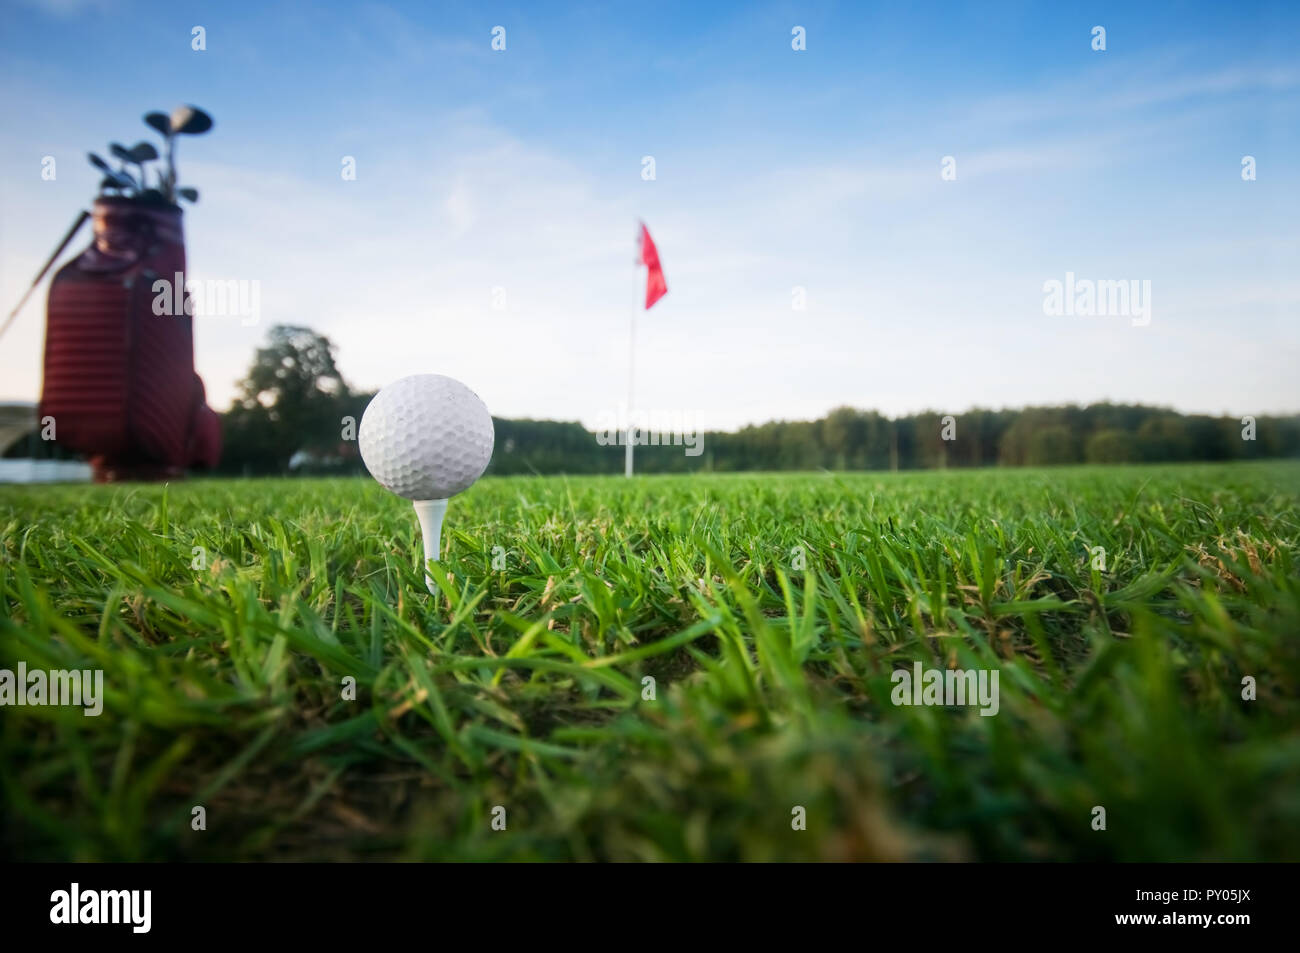 Ingranaggio di golf sul campo da golf. Bandiera rossa in background Foto Stock